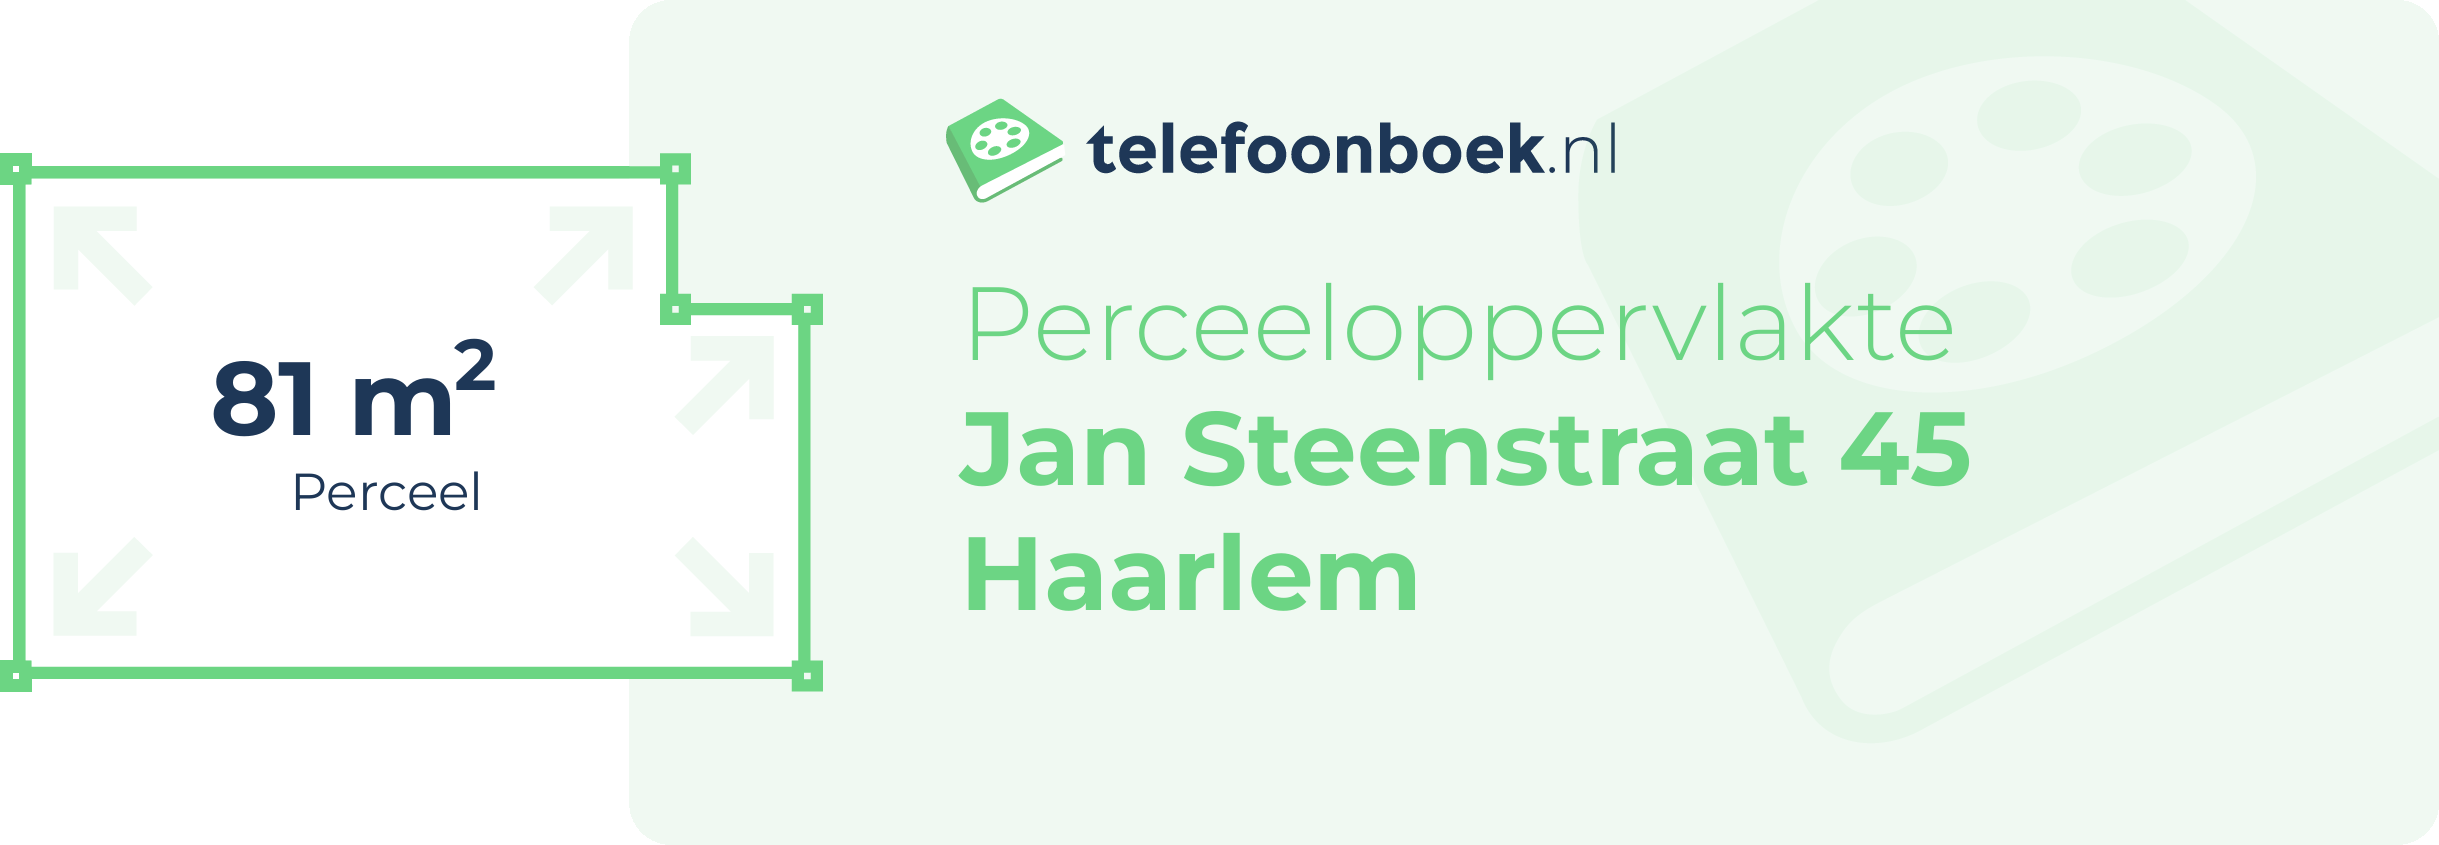 Perceeloppervlakte Jan Steenstraat 45 Haarlem